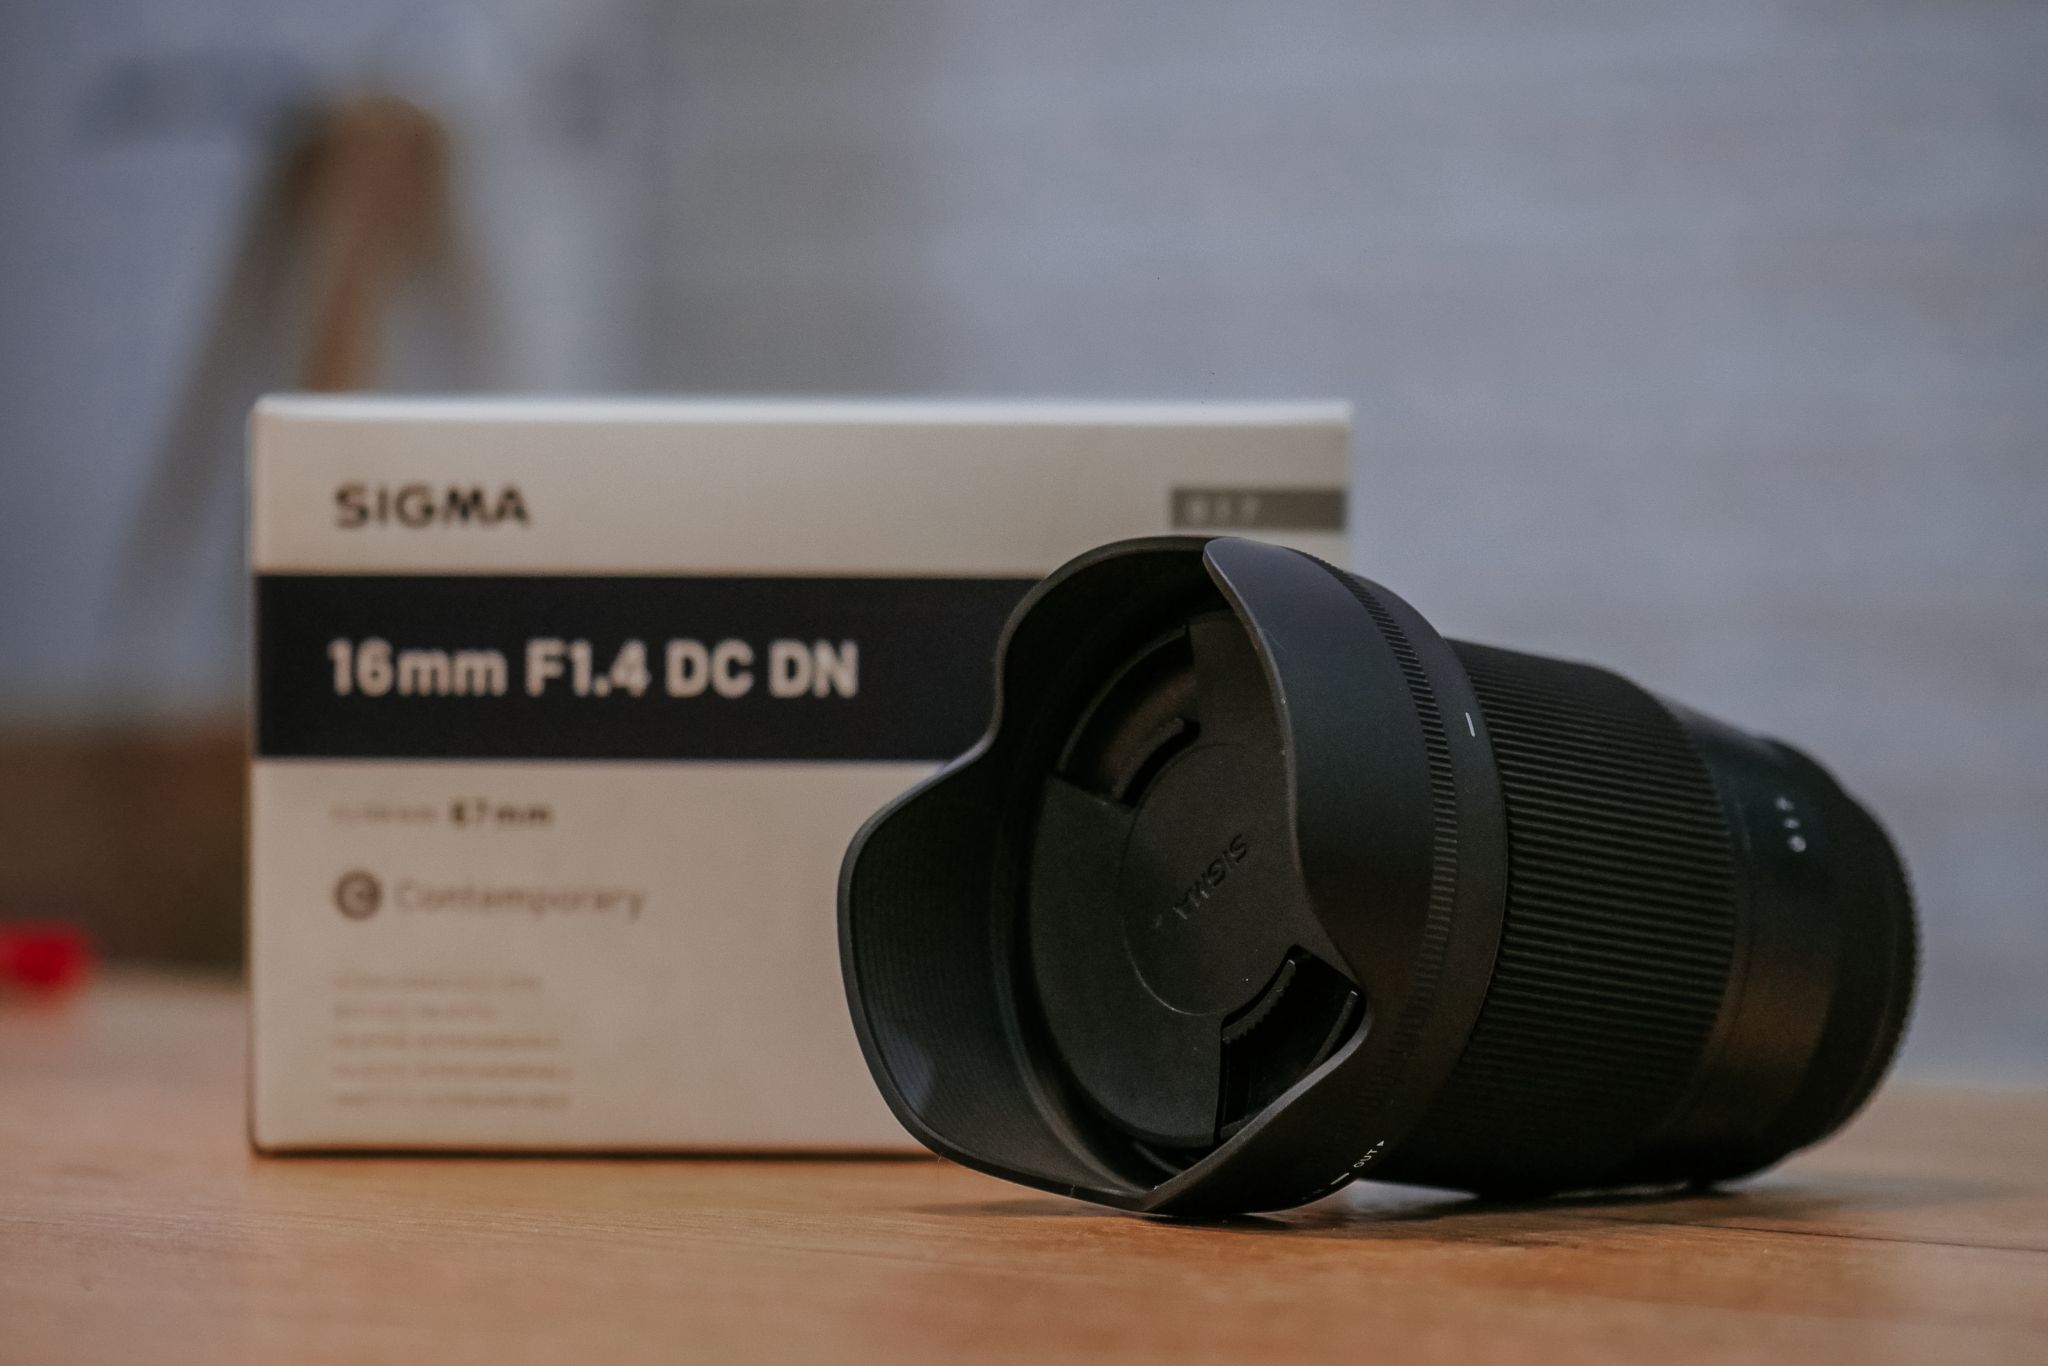 Sigma 16mm 1.4 dc dn. Sigma 16mm f1.4 Sony e. Sigma 16mm f1.4 Sony. Sigma 16mm f/1.4 DC DN. Sigma 16mm f1.4 DC DN Contemporary Sony e.